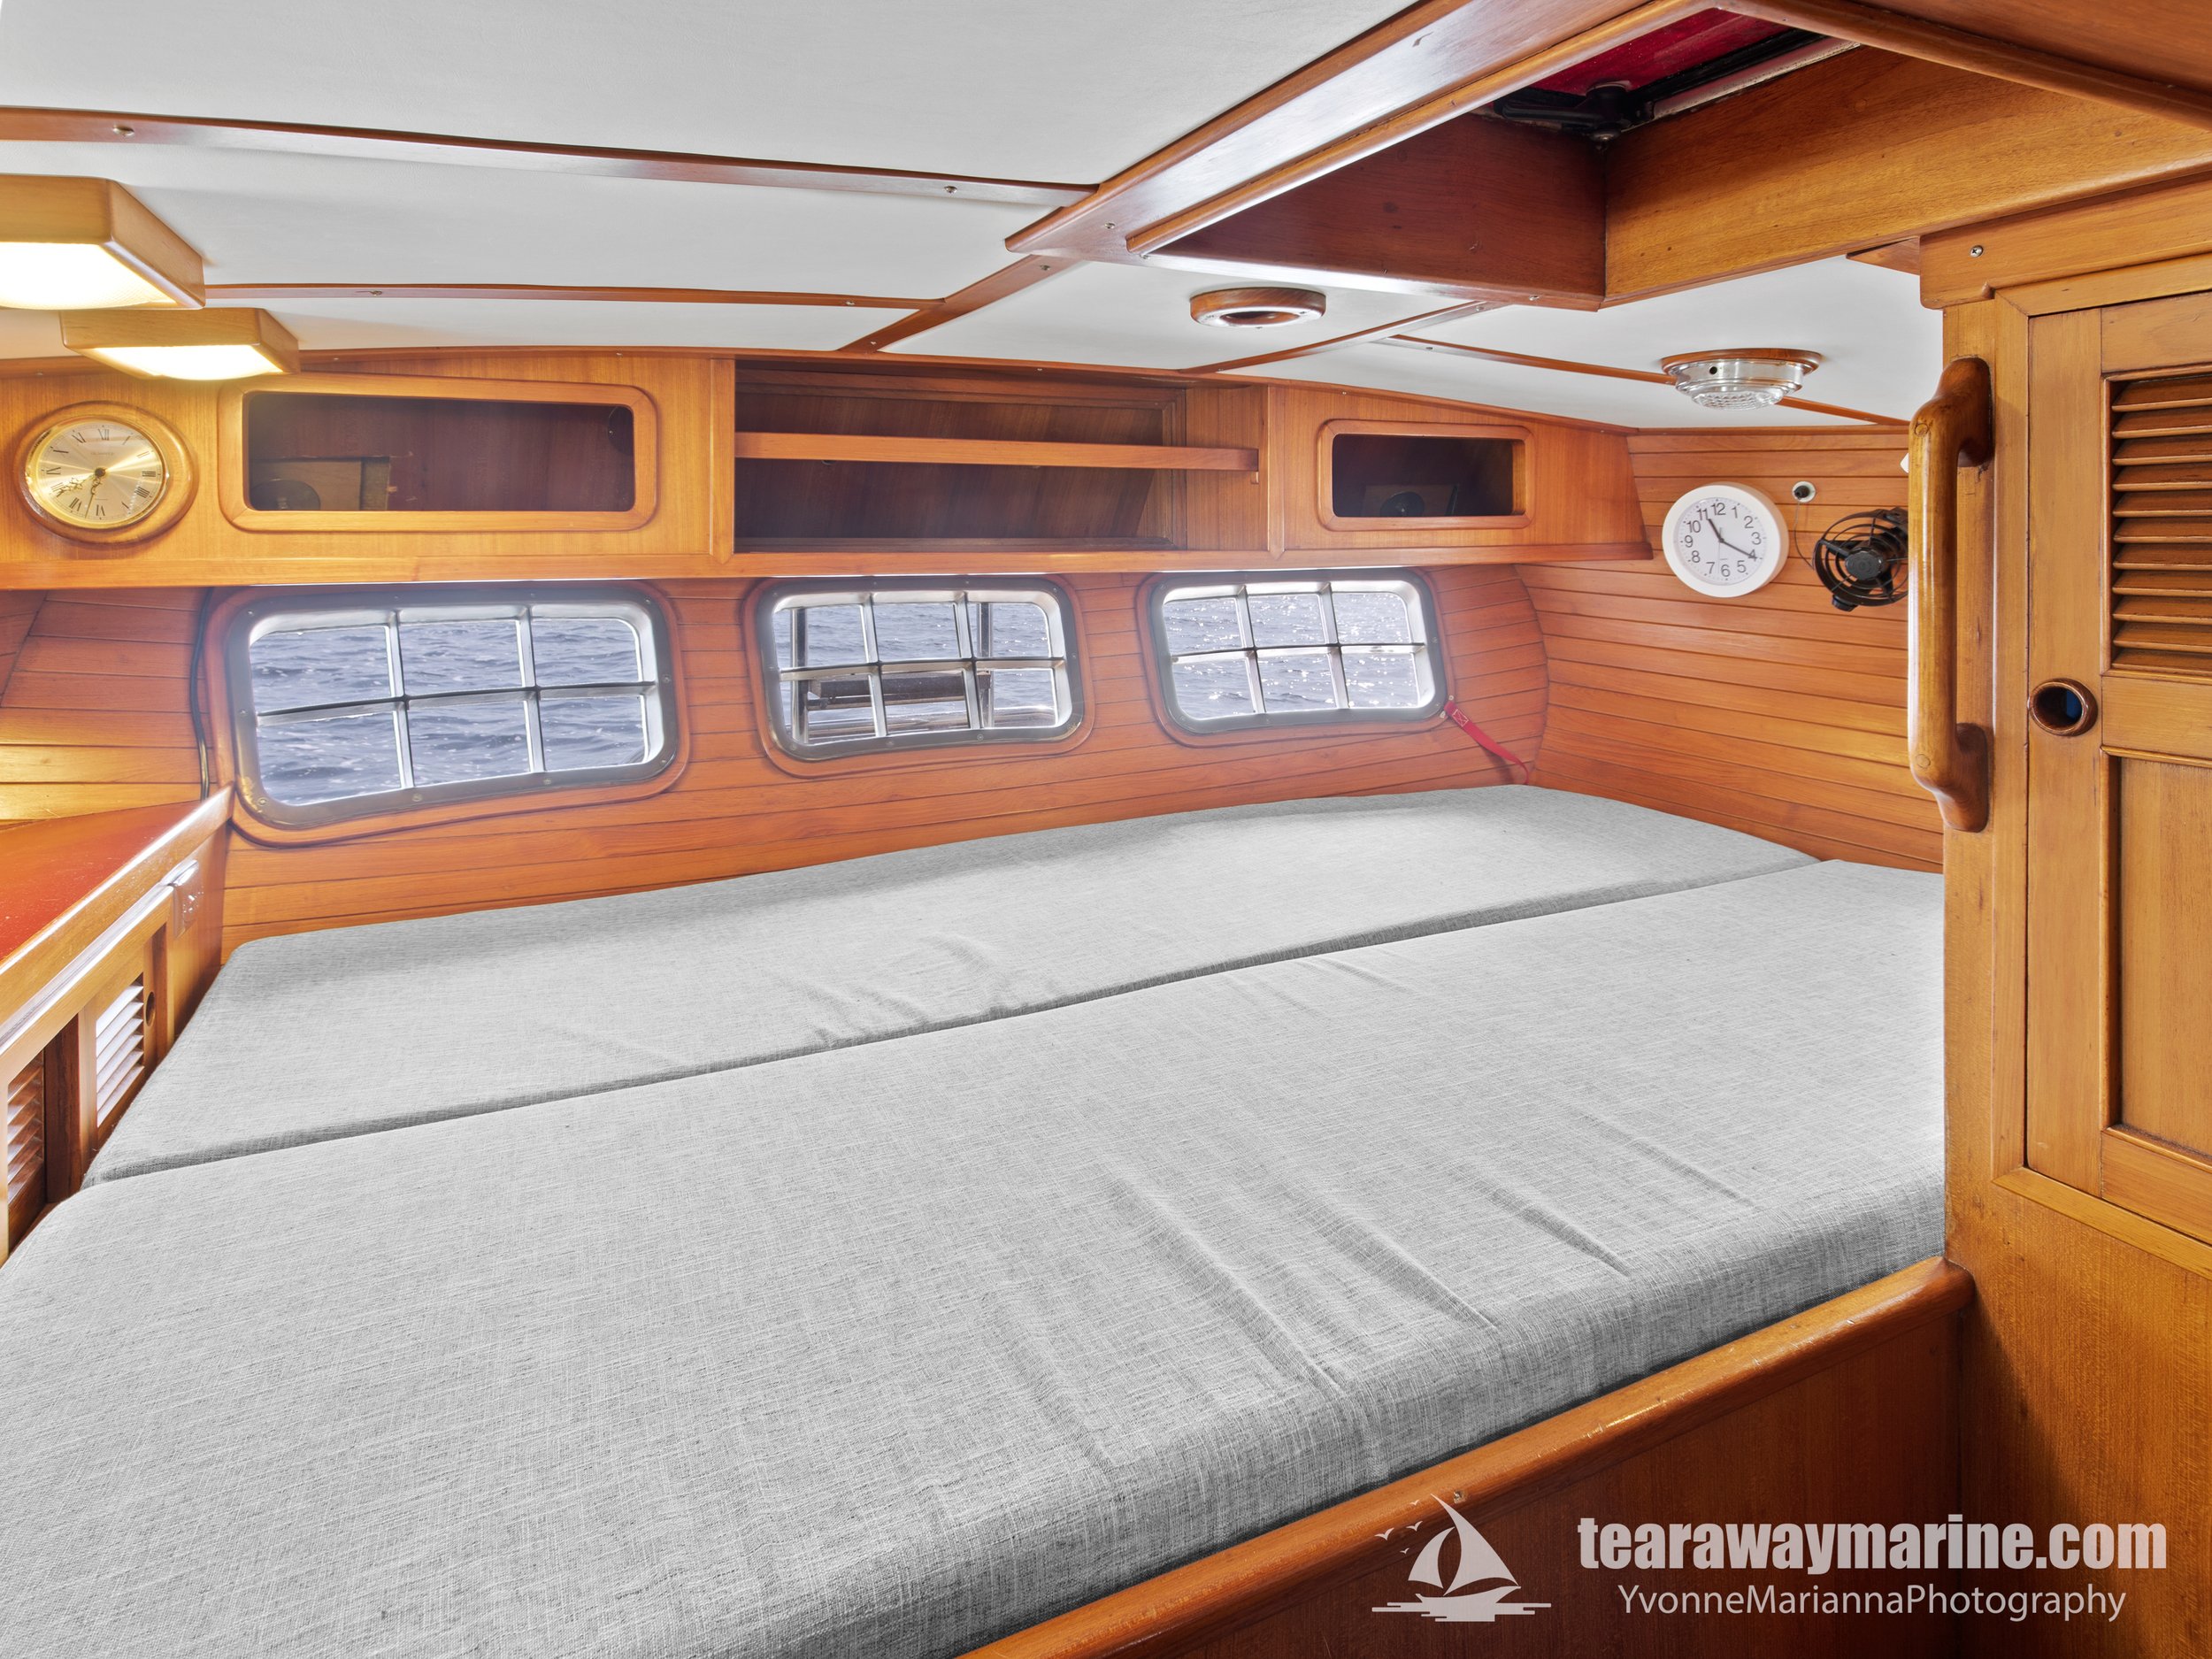 Calypso Yacht Tearaway Marine - Yvonne Marianna Photography-3.jpg